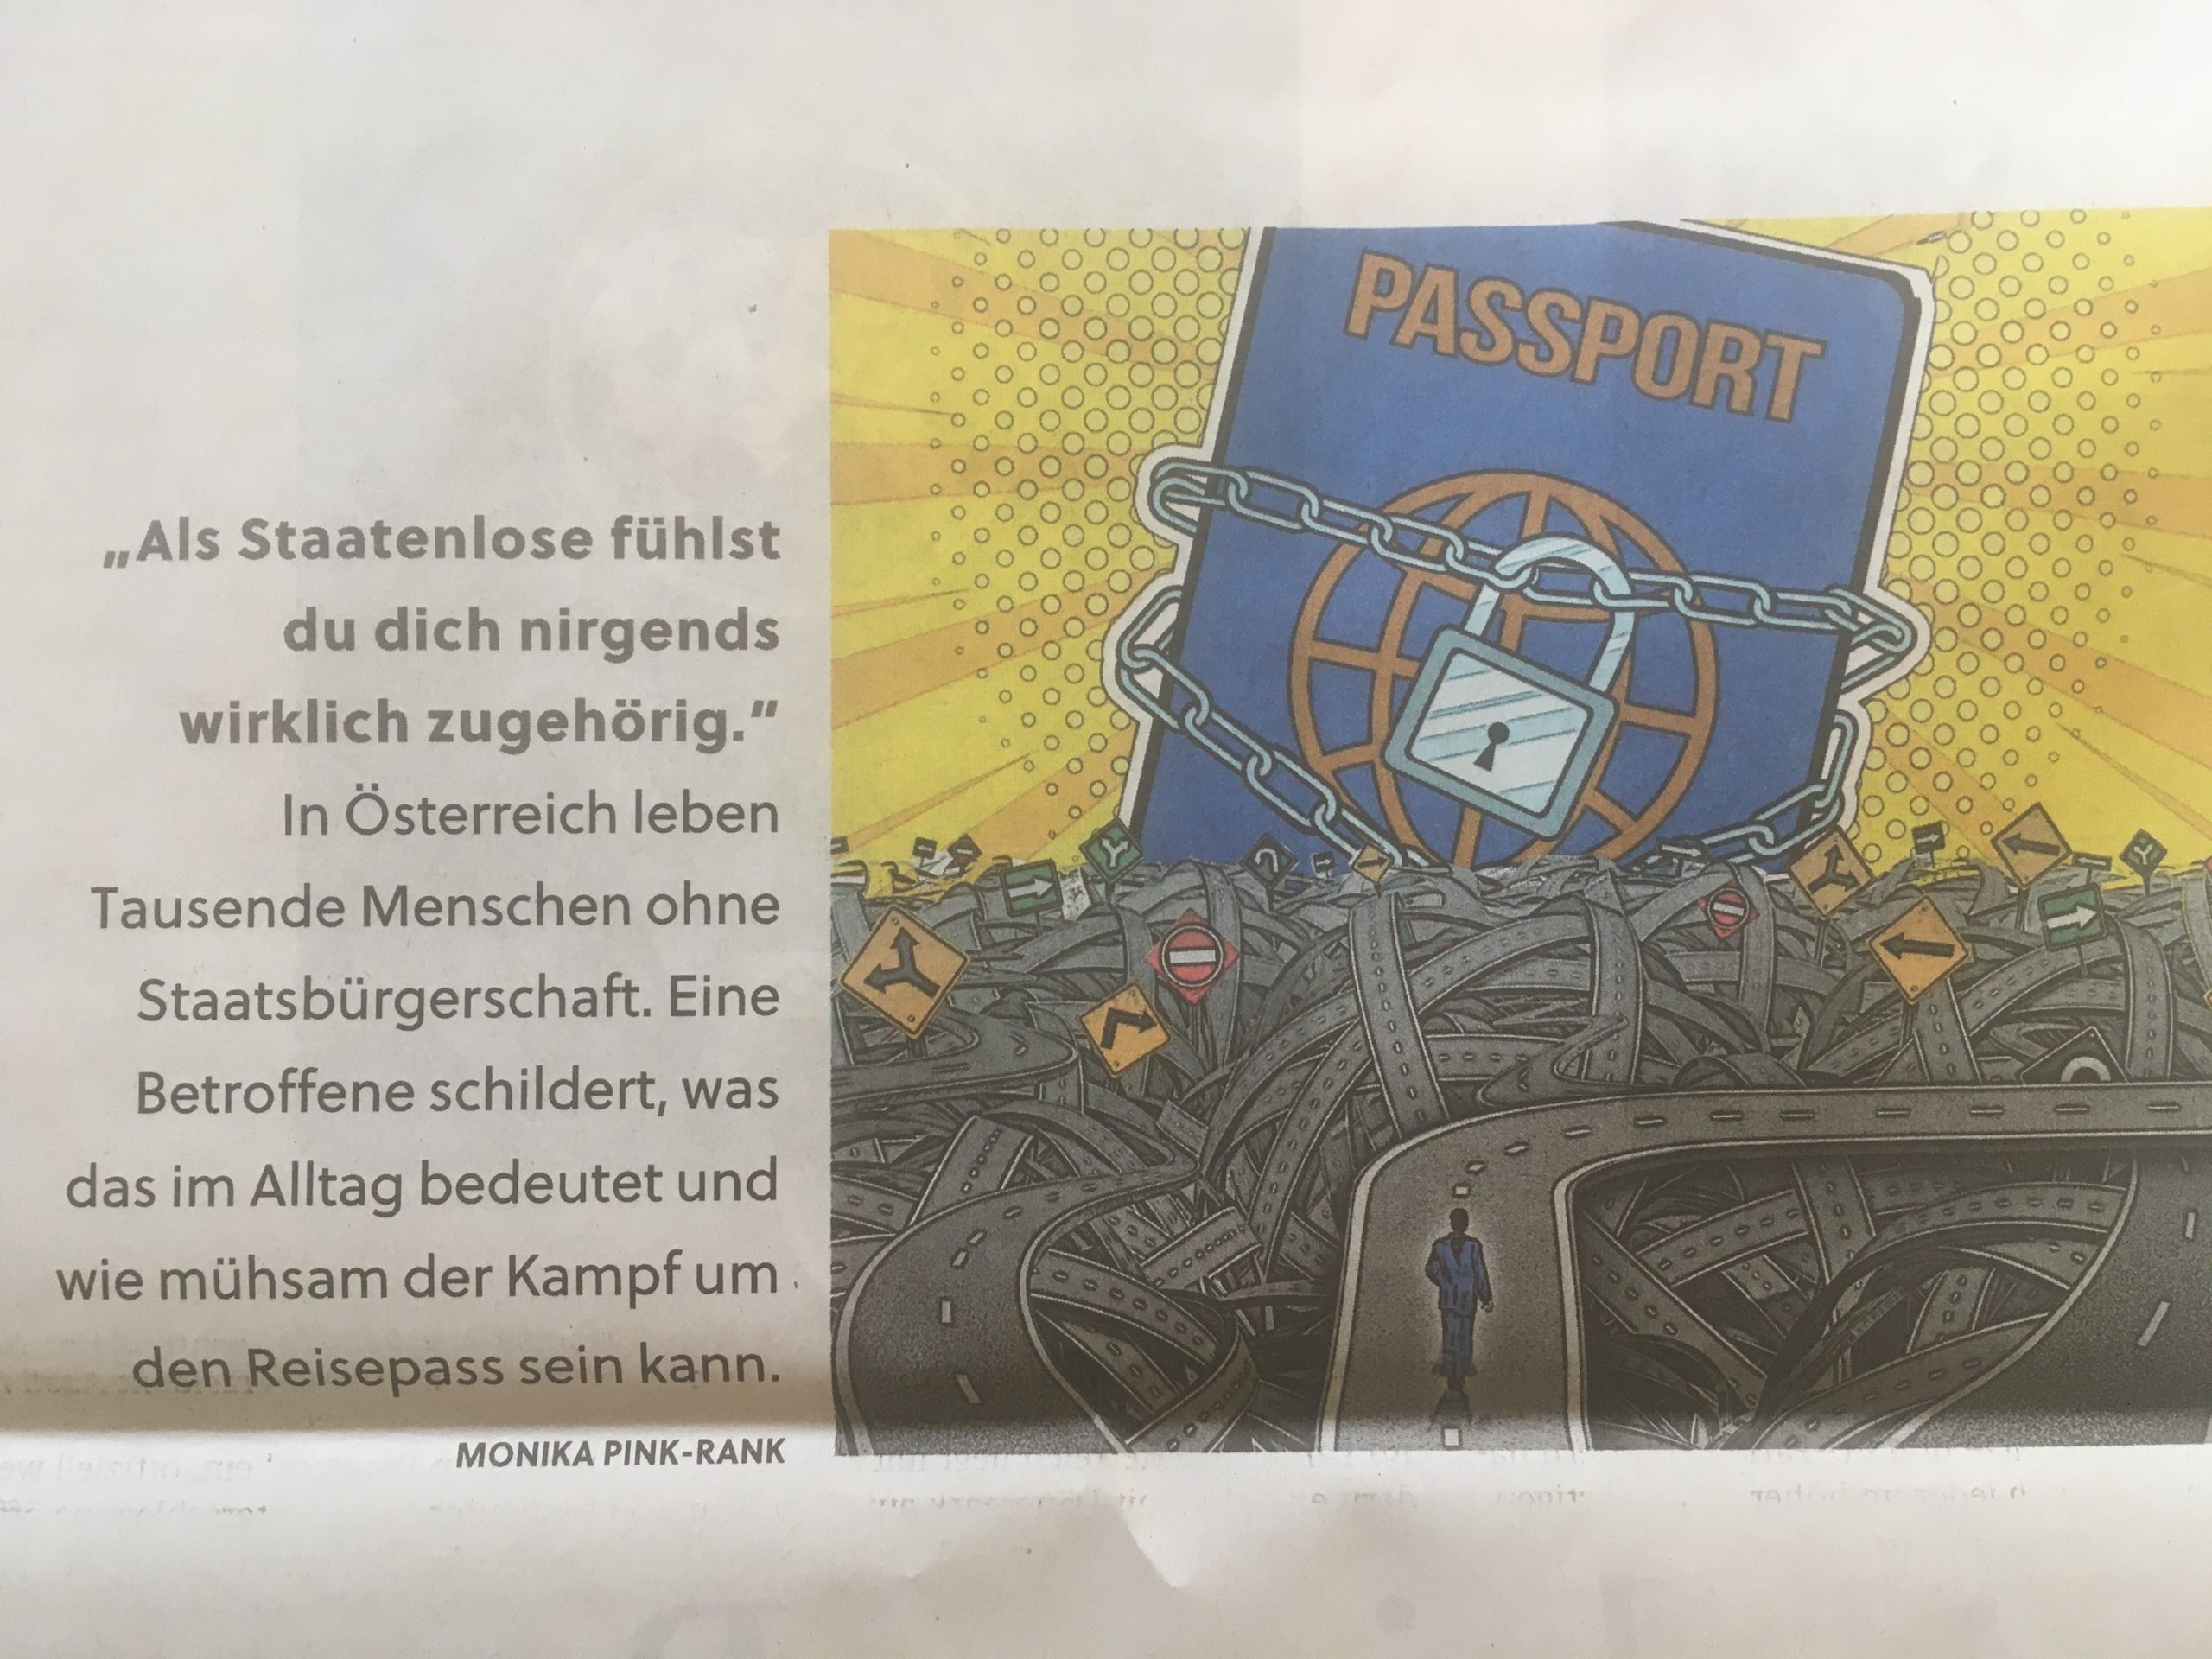 Abbildung des SN-Artikels. Man kann eine Illustration mit einem in Ketten gelegten Reisepass sehen. Und die Headline: 